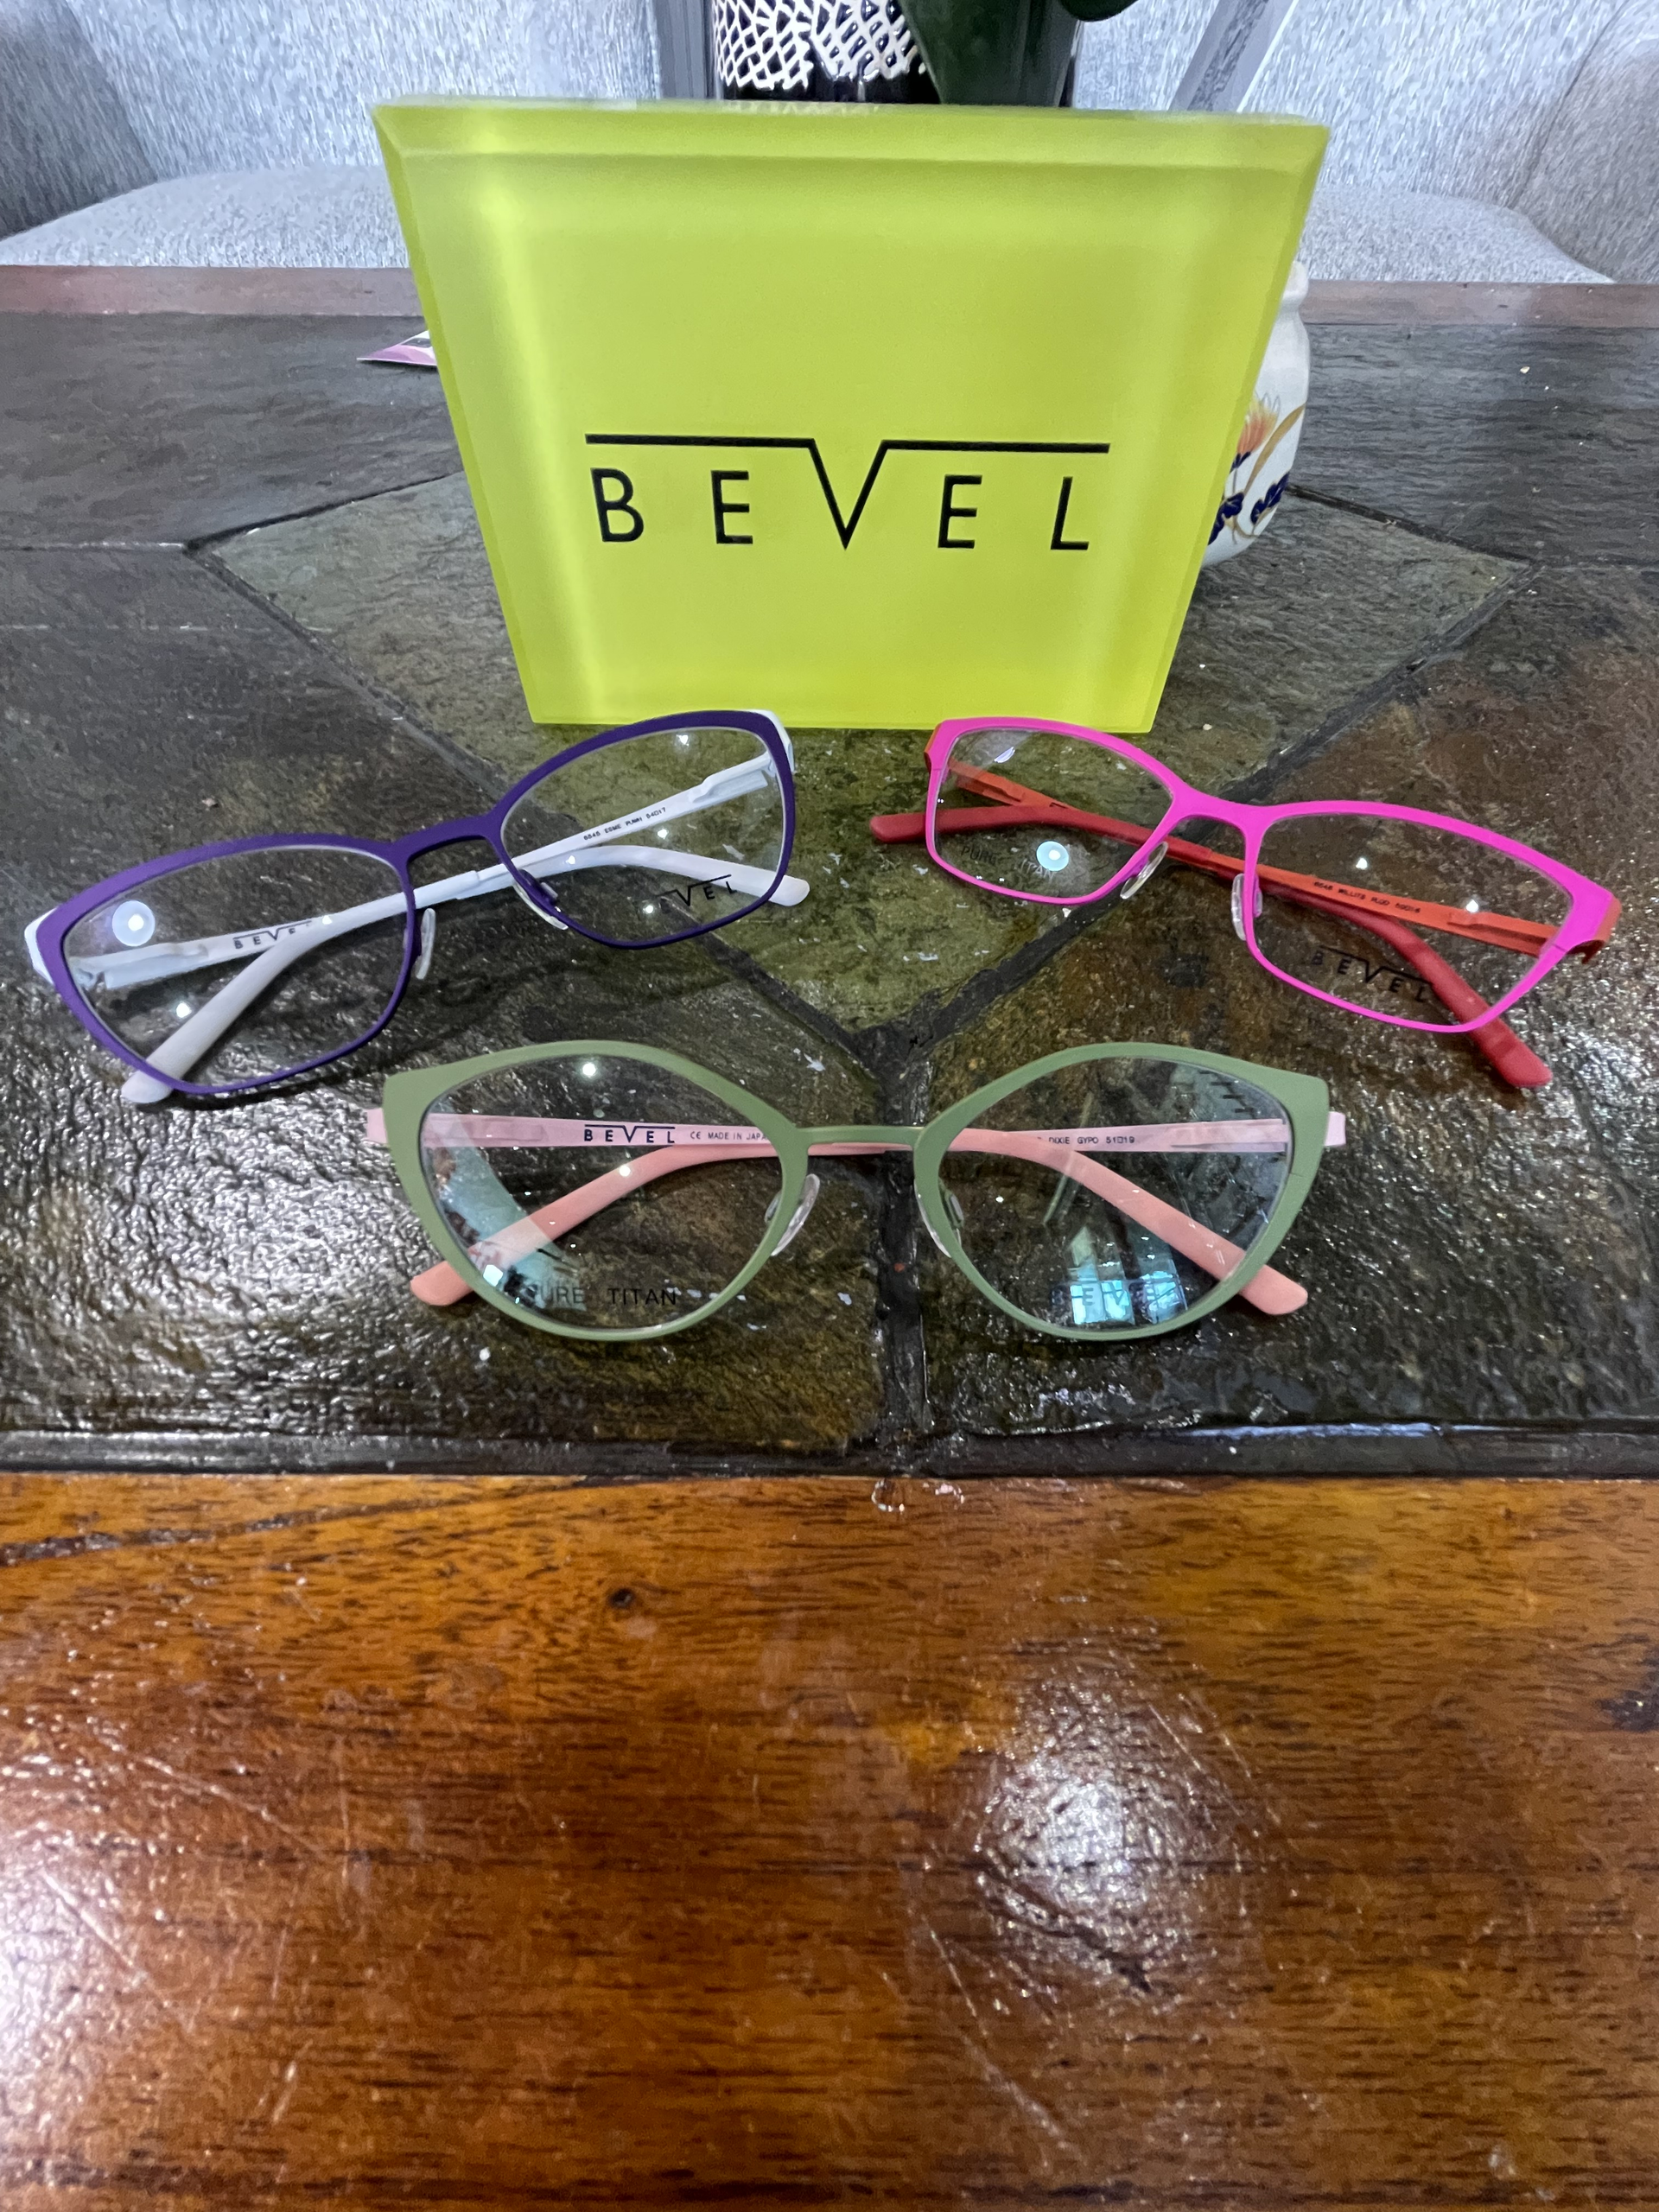 bevel branded eye glass frames in assorted styles